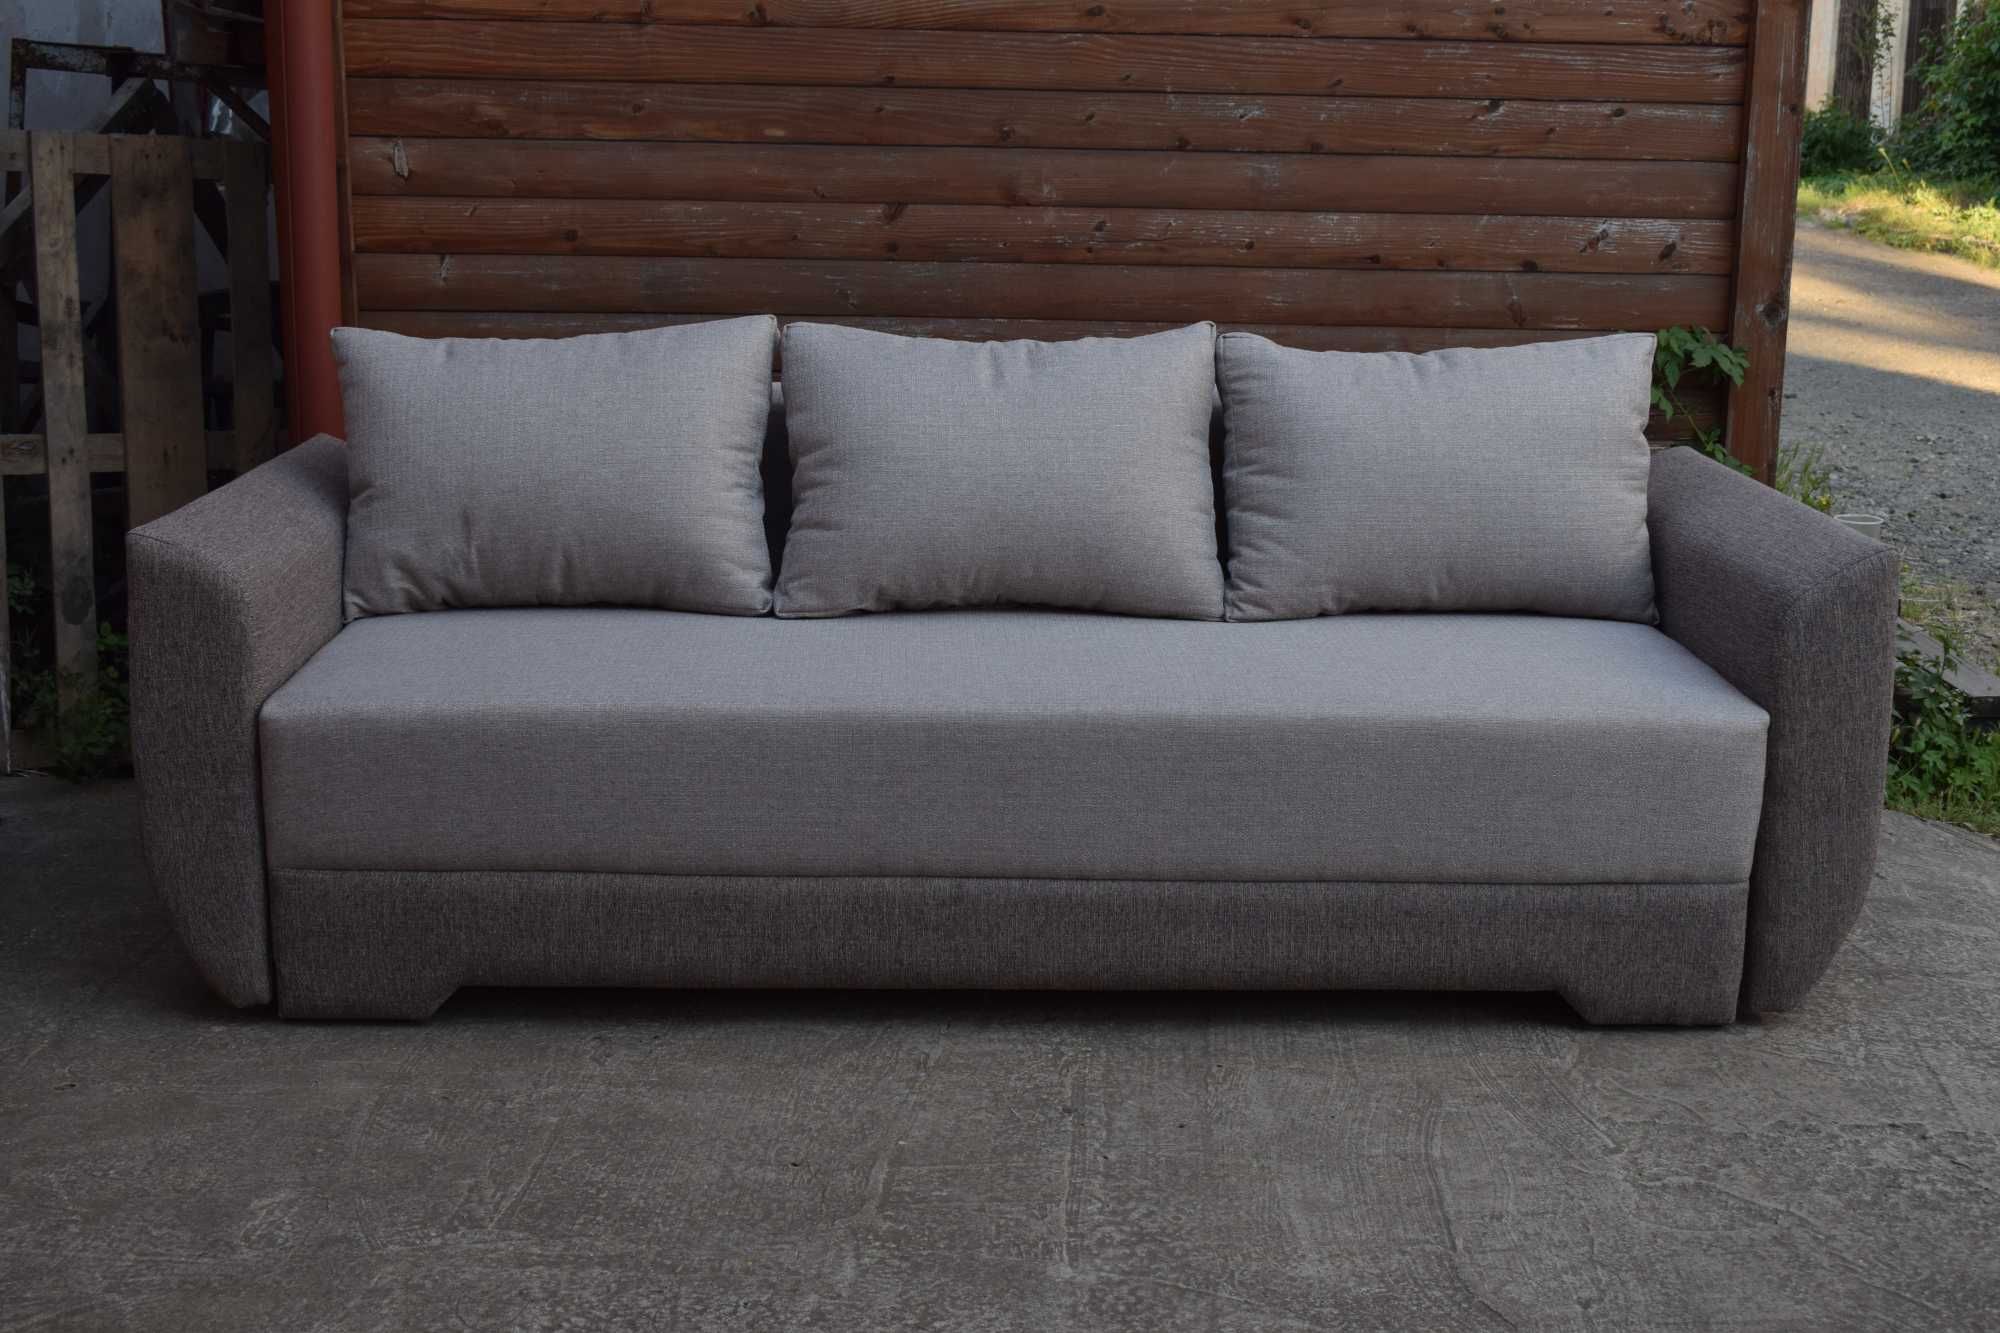 Новий розкладний диван "Даллас" єврокнижка від виробника